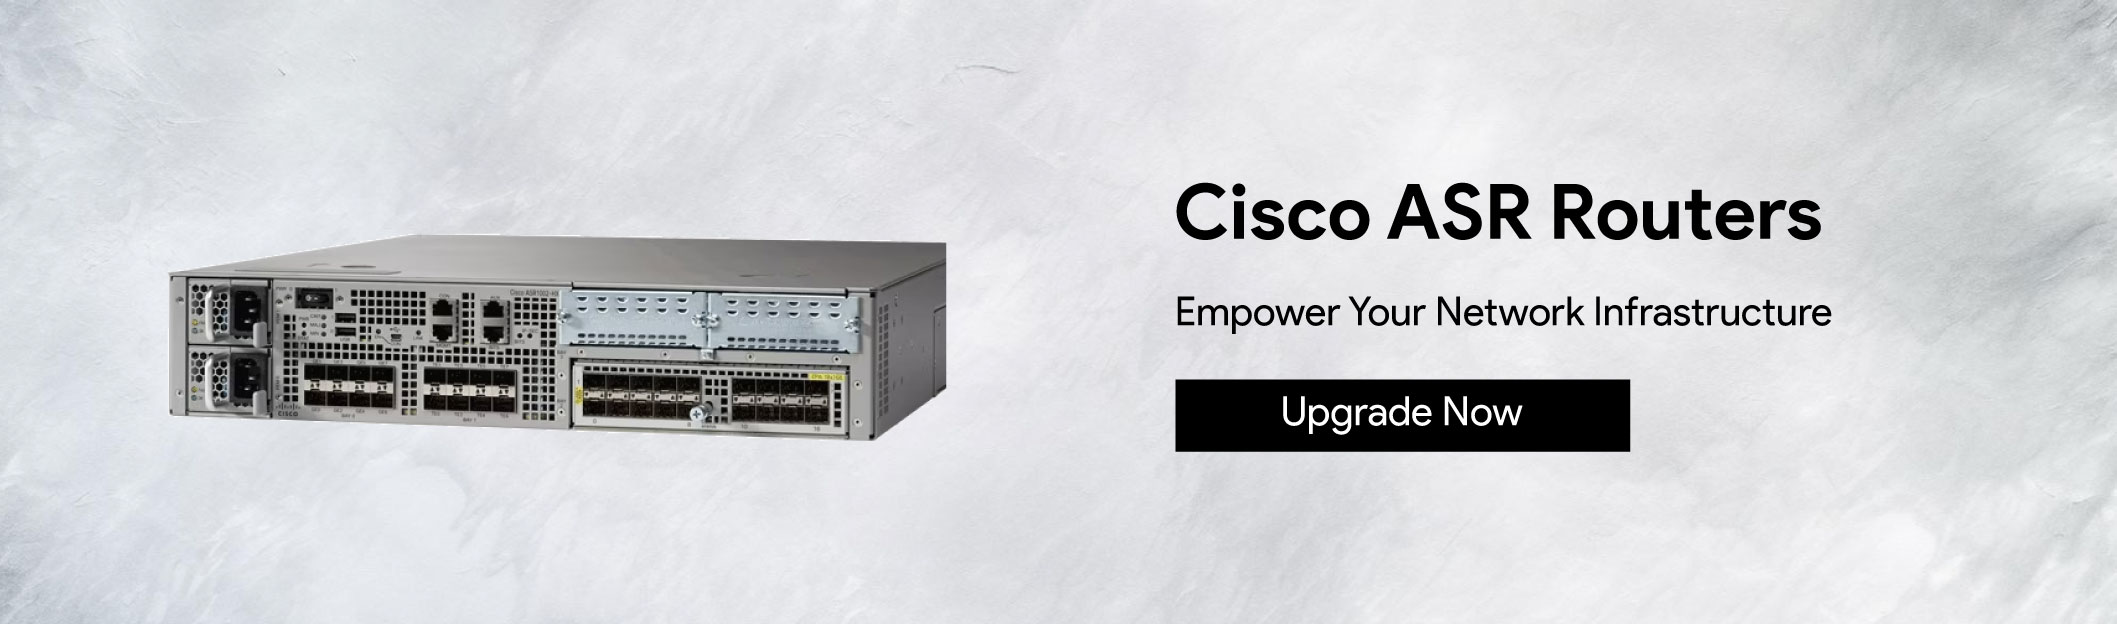 Cisco-ASR-Routers